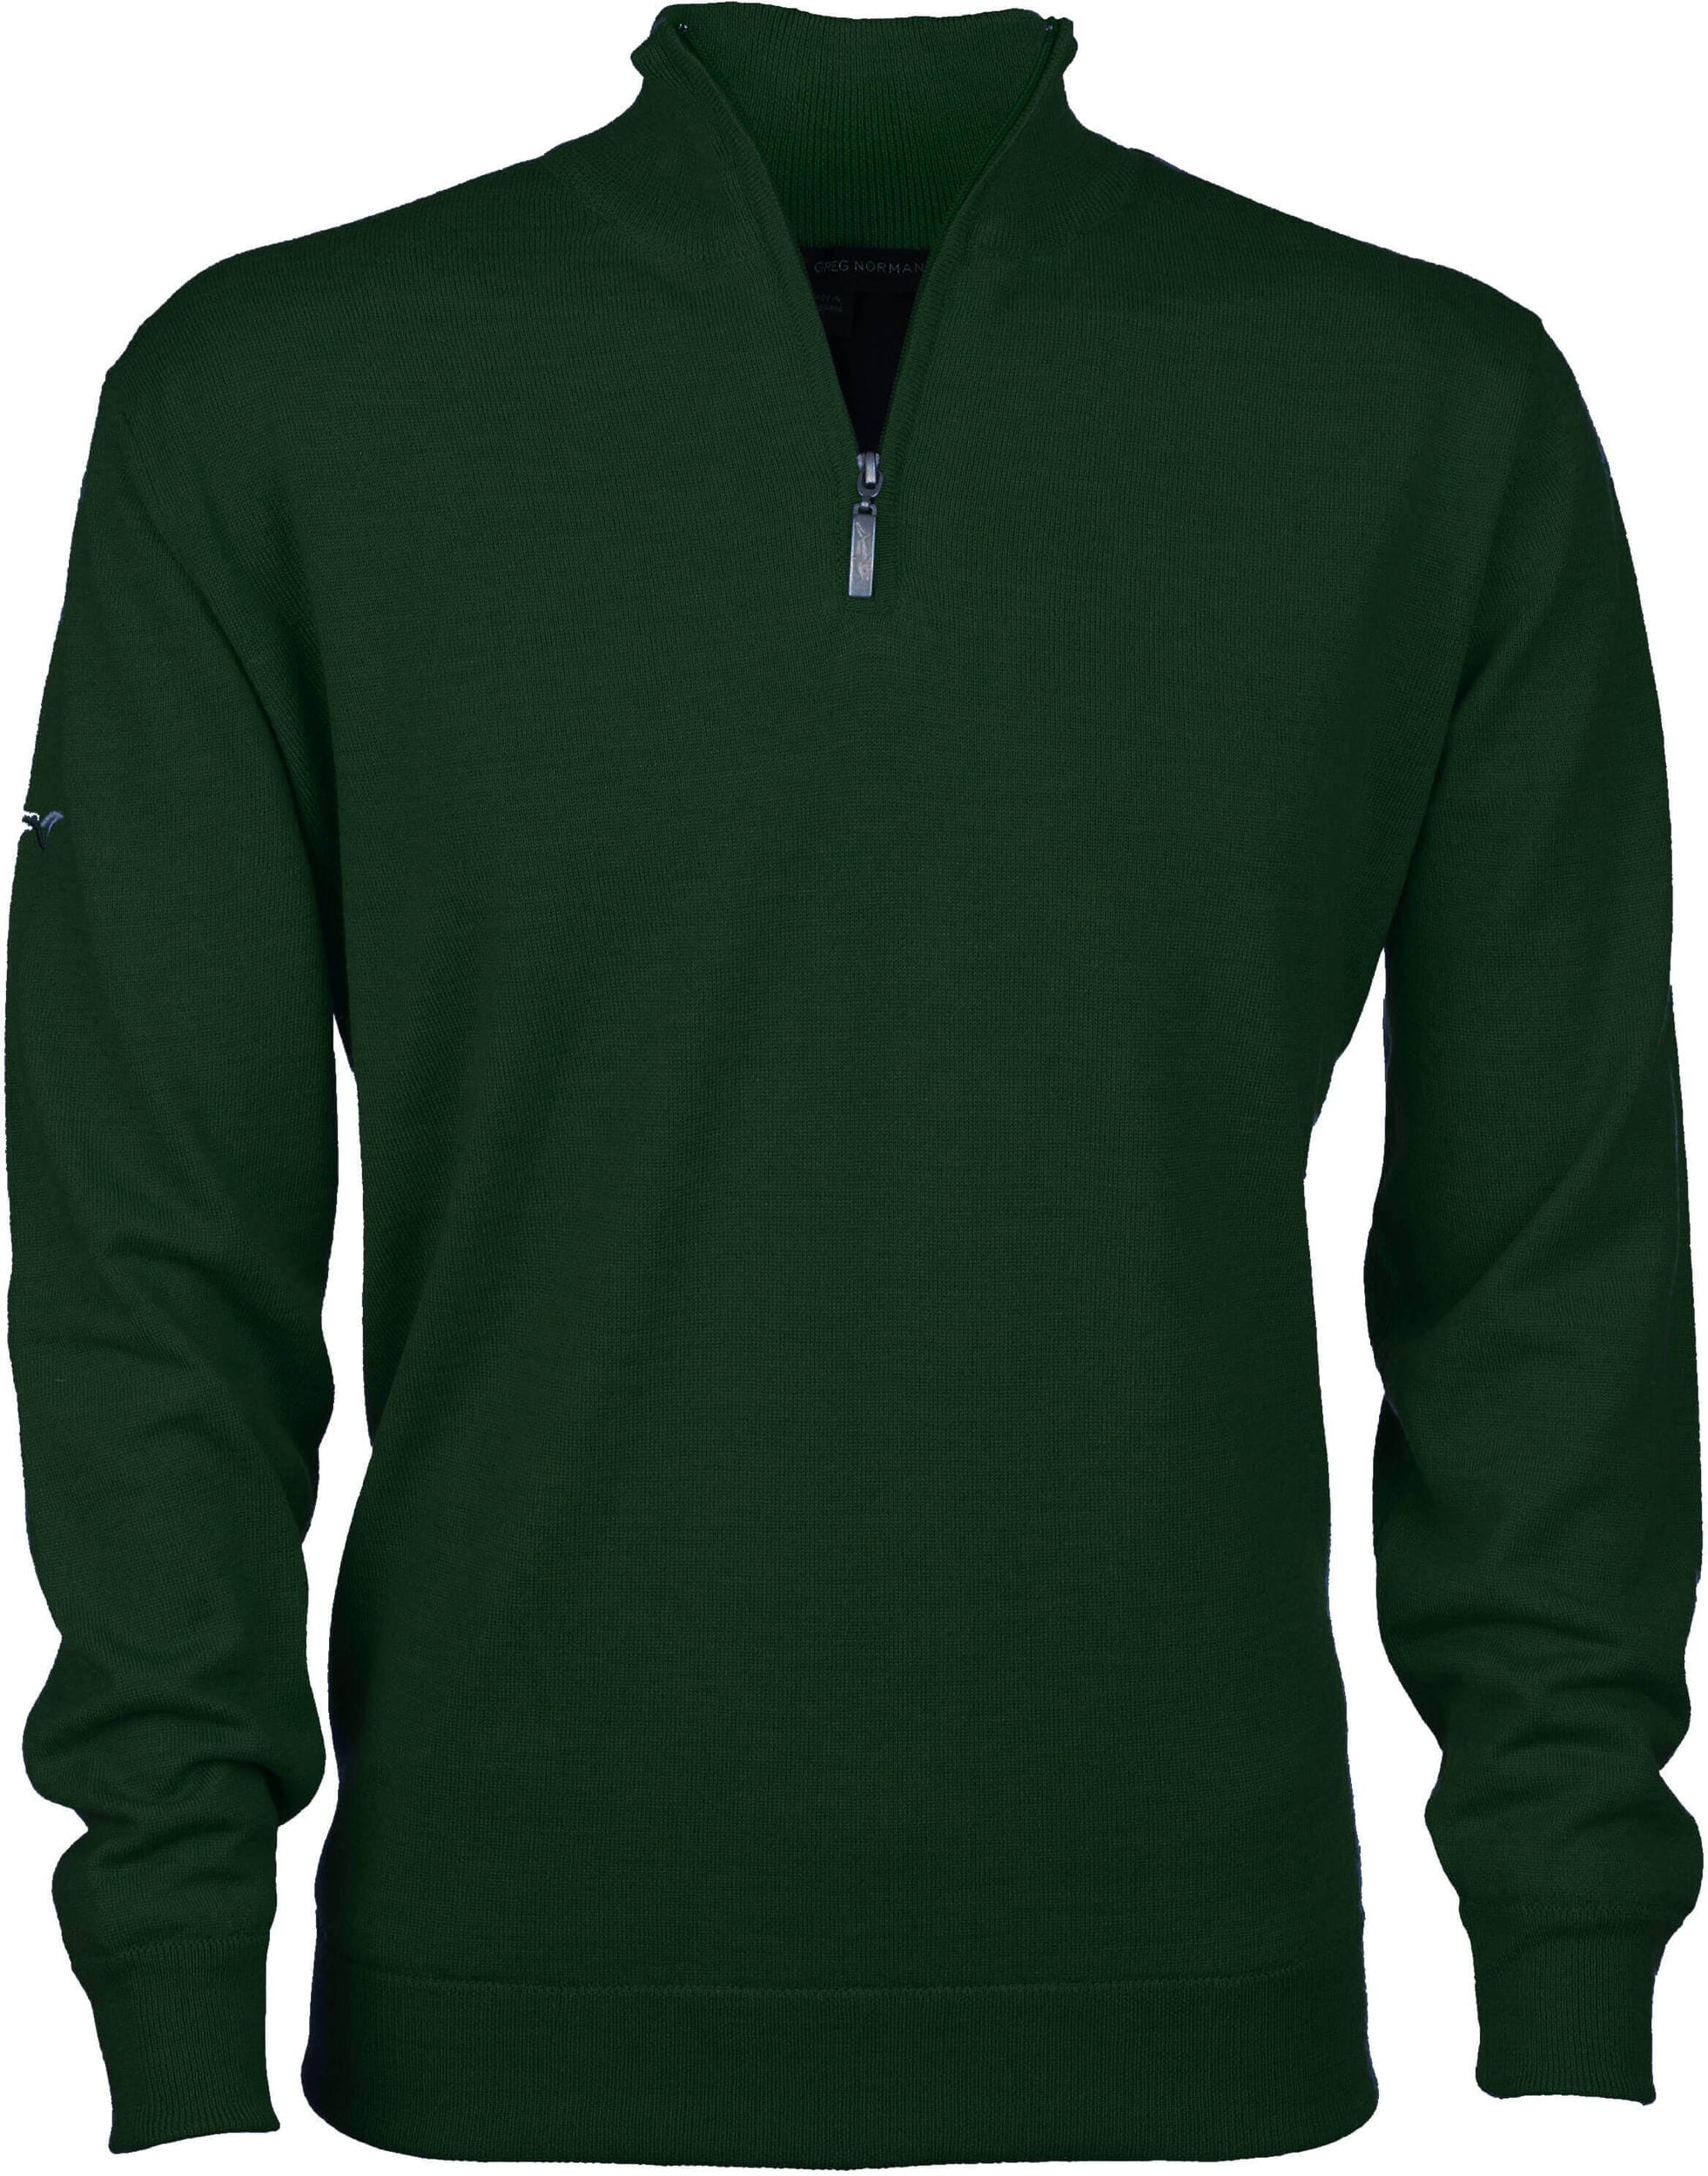 Greg Norman Windbreaker Lined 1/4 Zip Sweater, green